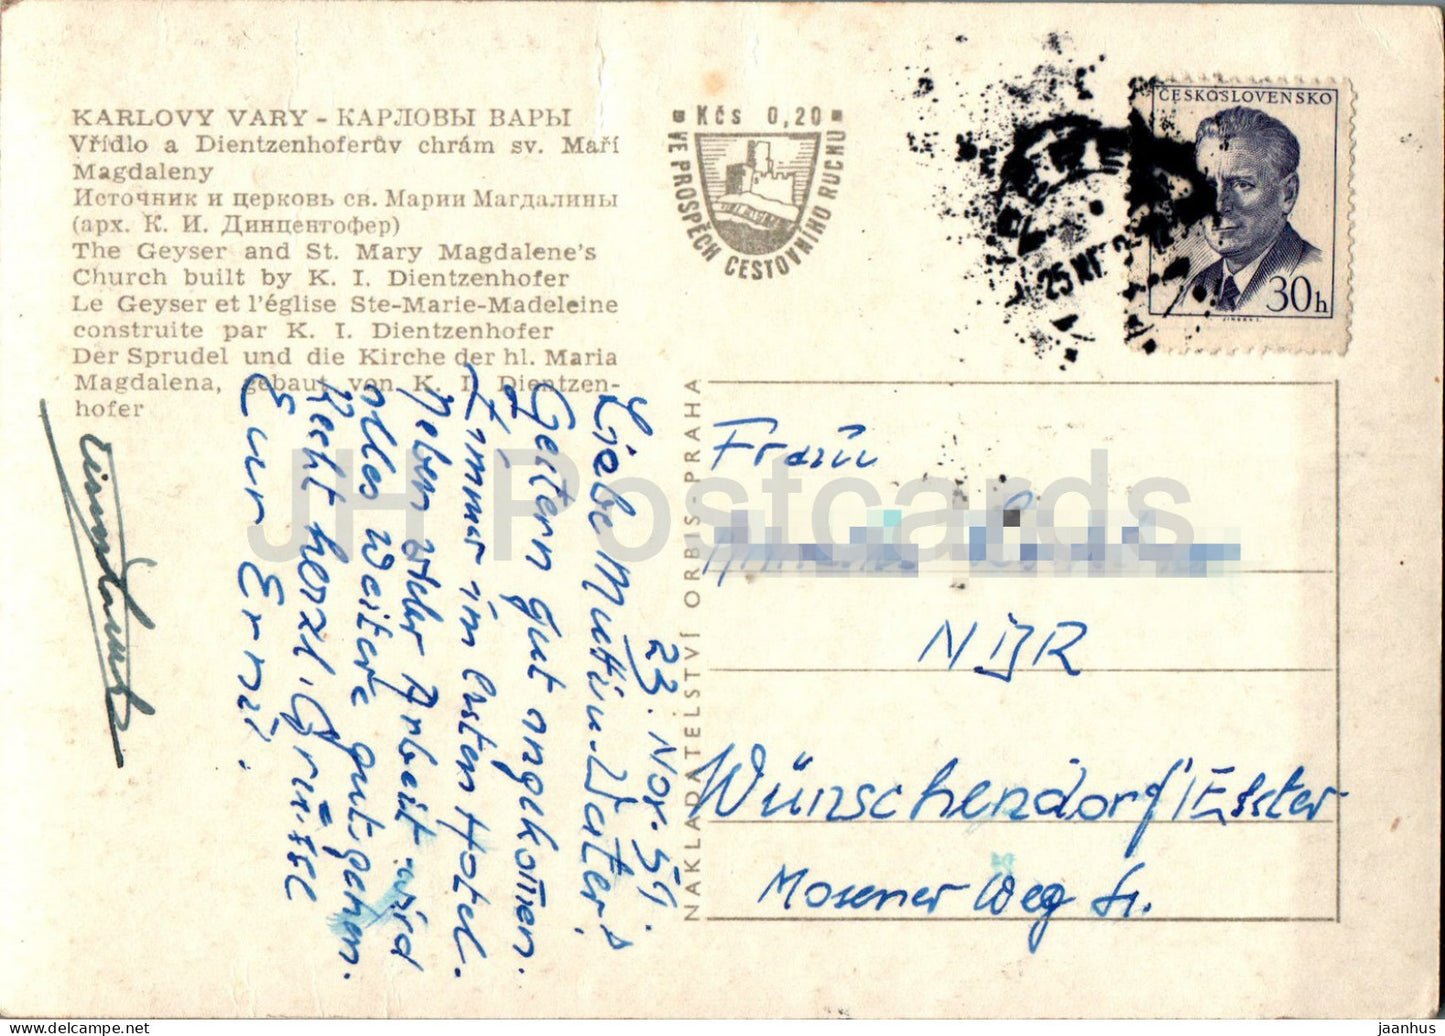 Karlovy Vary - Le Geyser et l'église Sainte-Marie-Madeleine - carte postale ancienne - 1959 - République tchèque - Tchécoslovaquie - utilisé